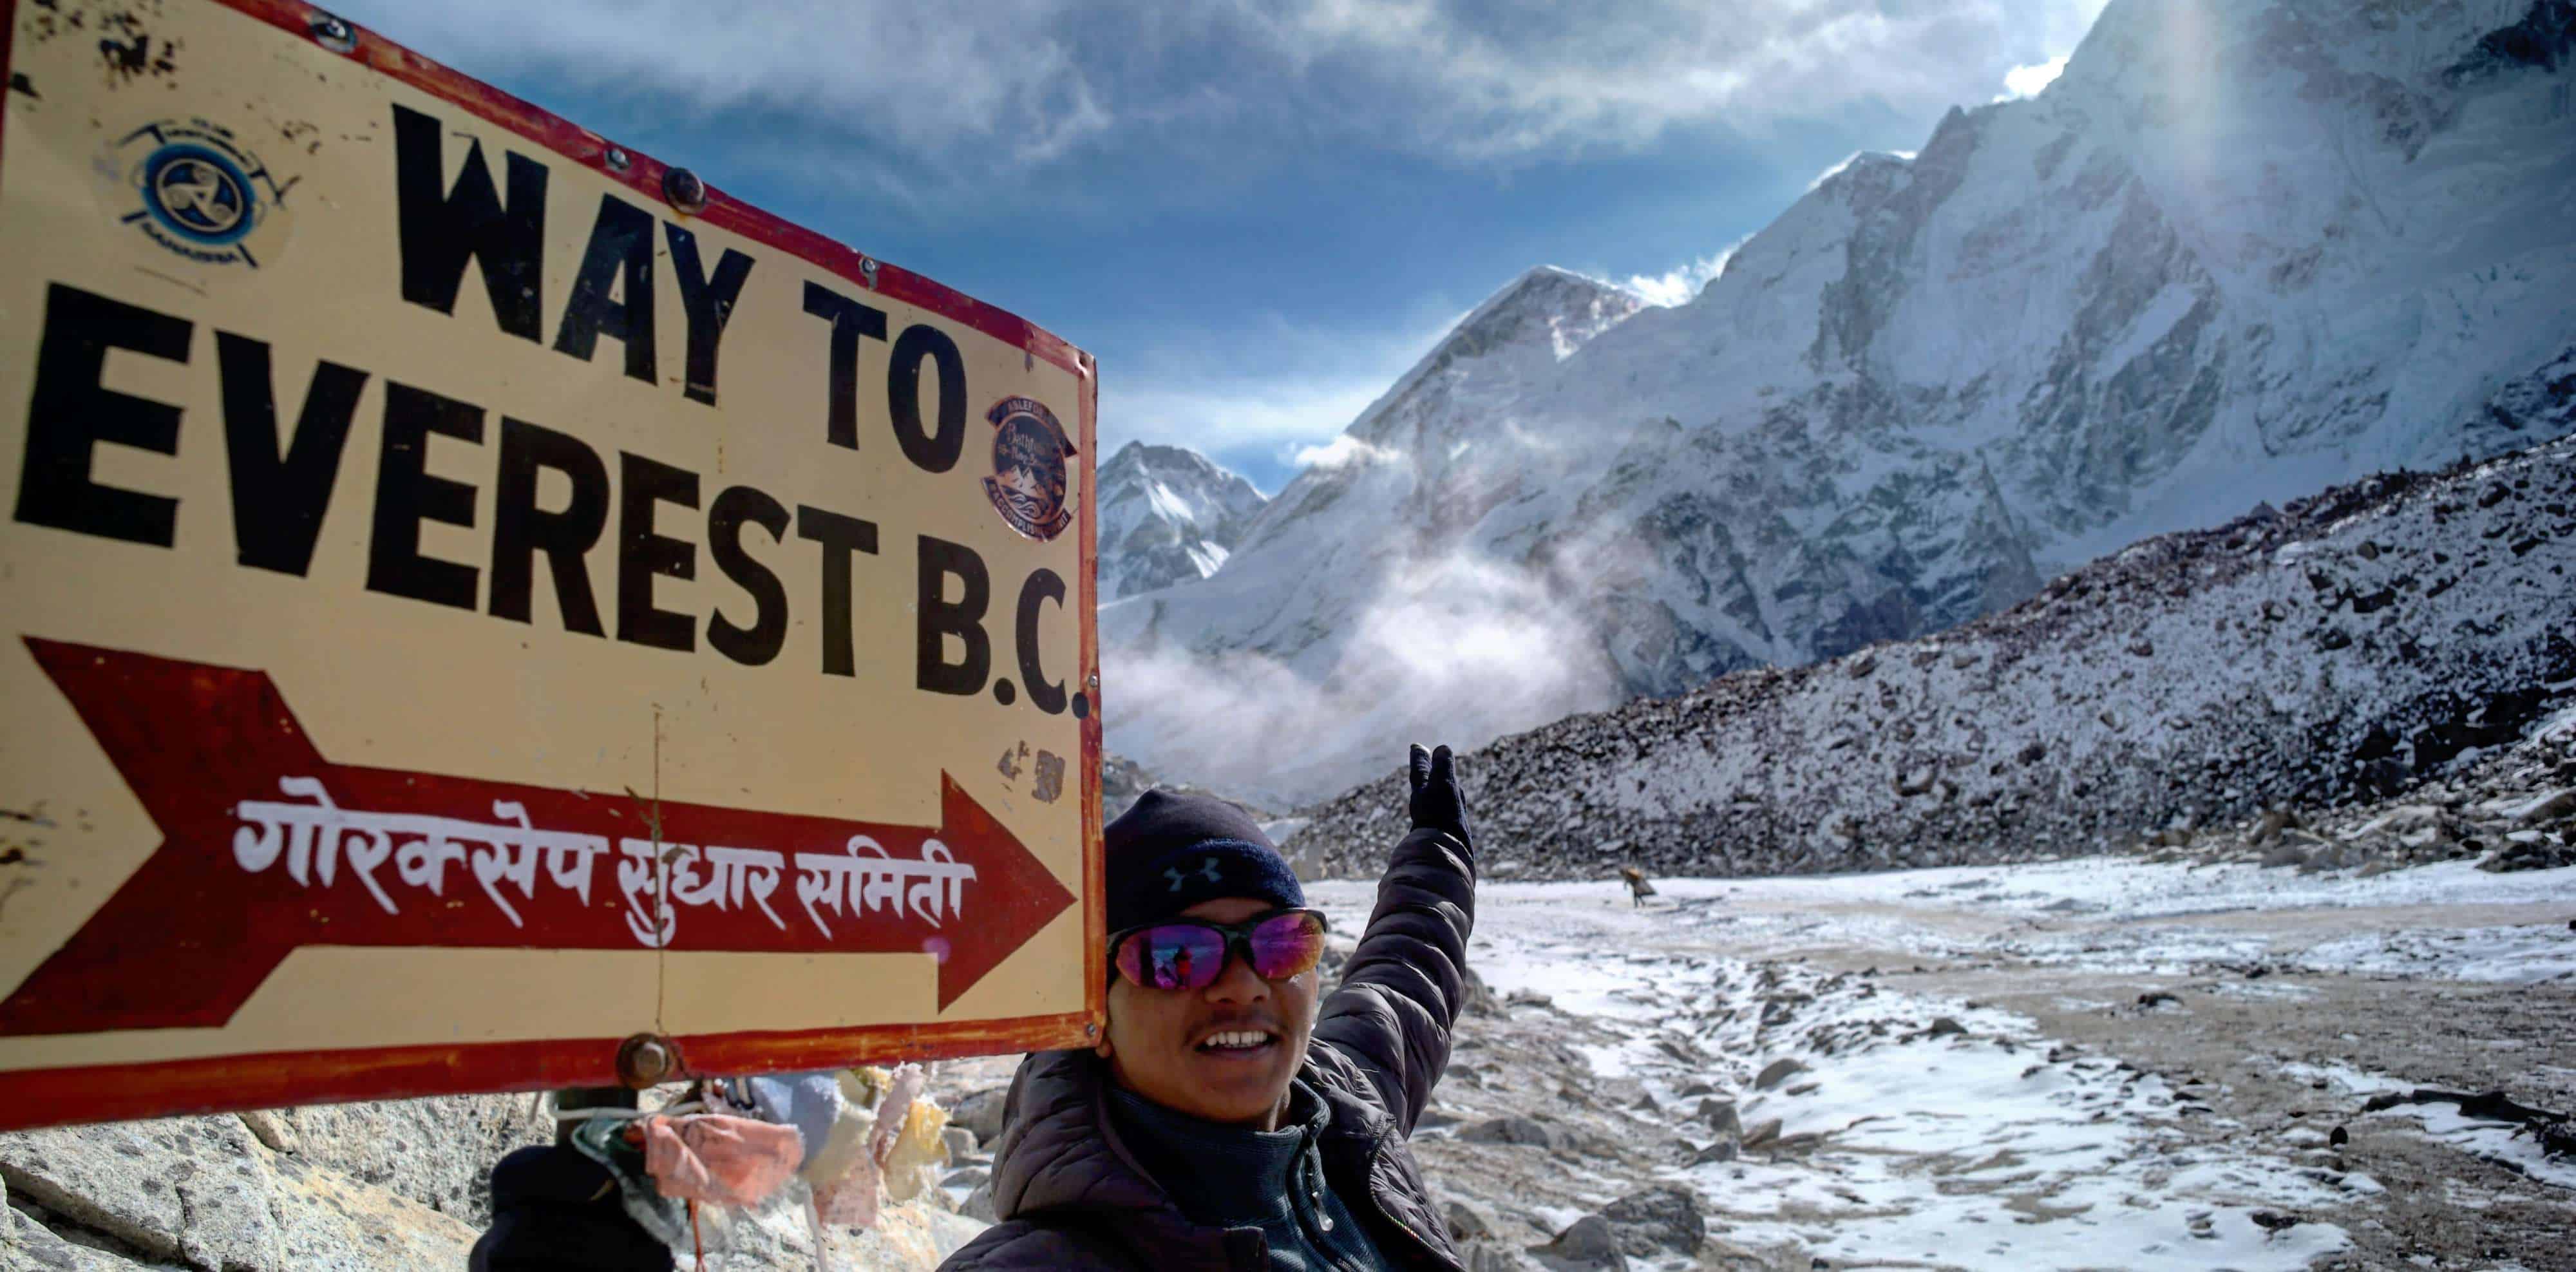 Trekking in Nepal 2022 and 2023